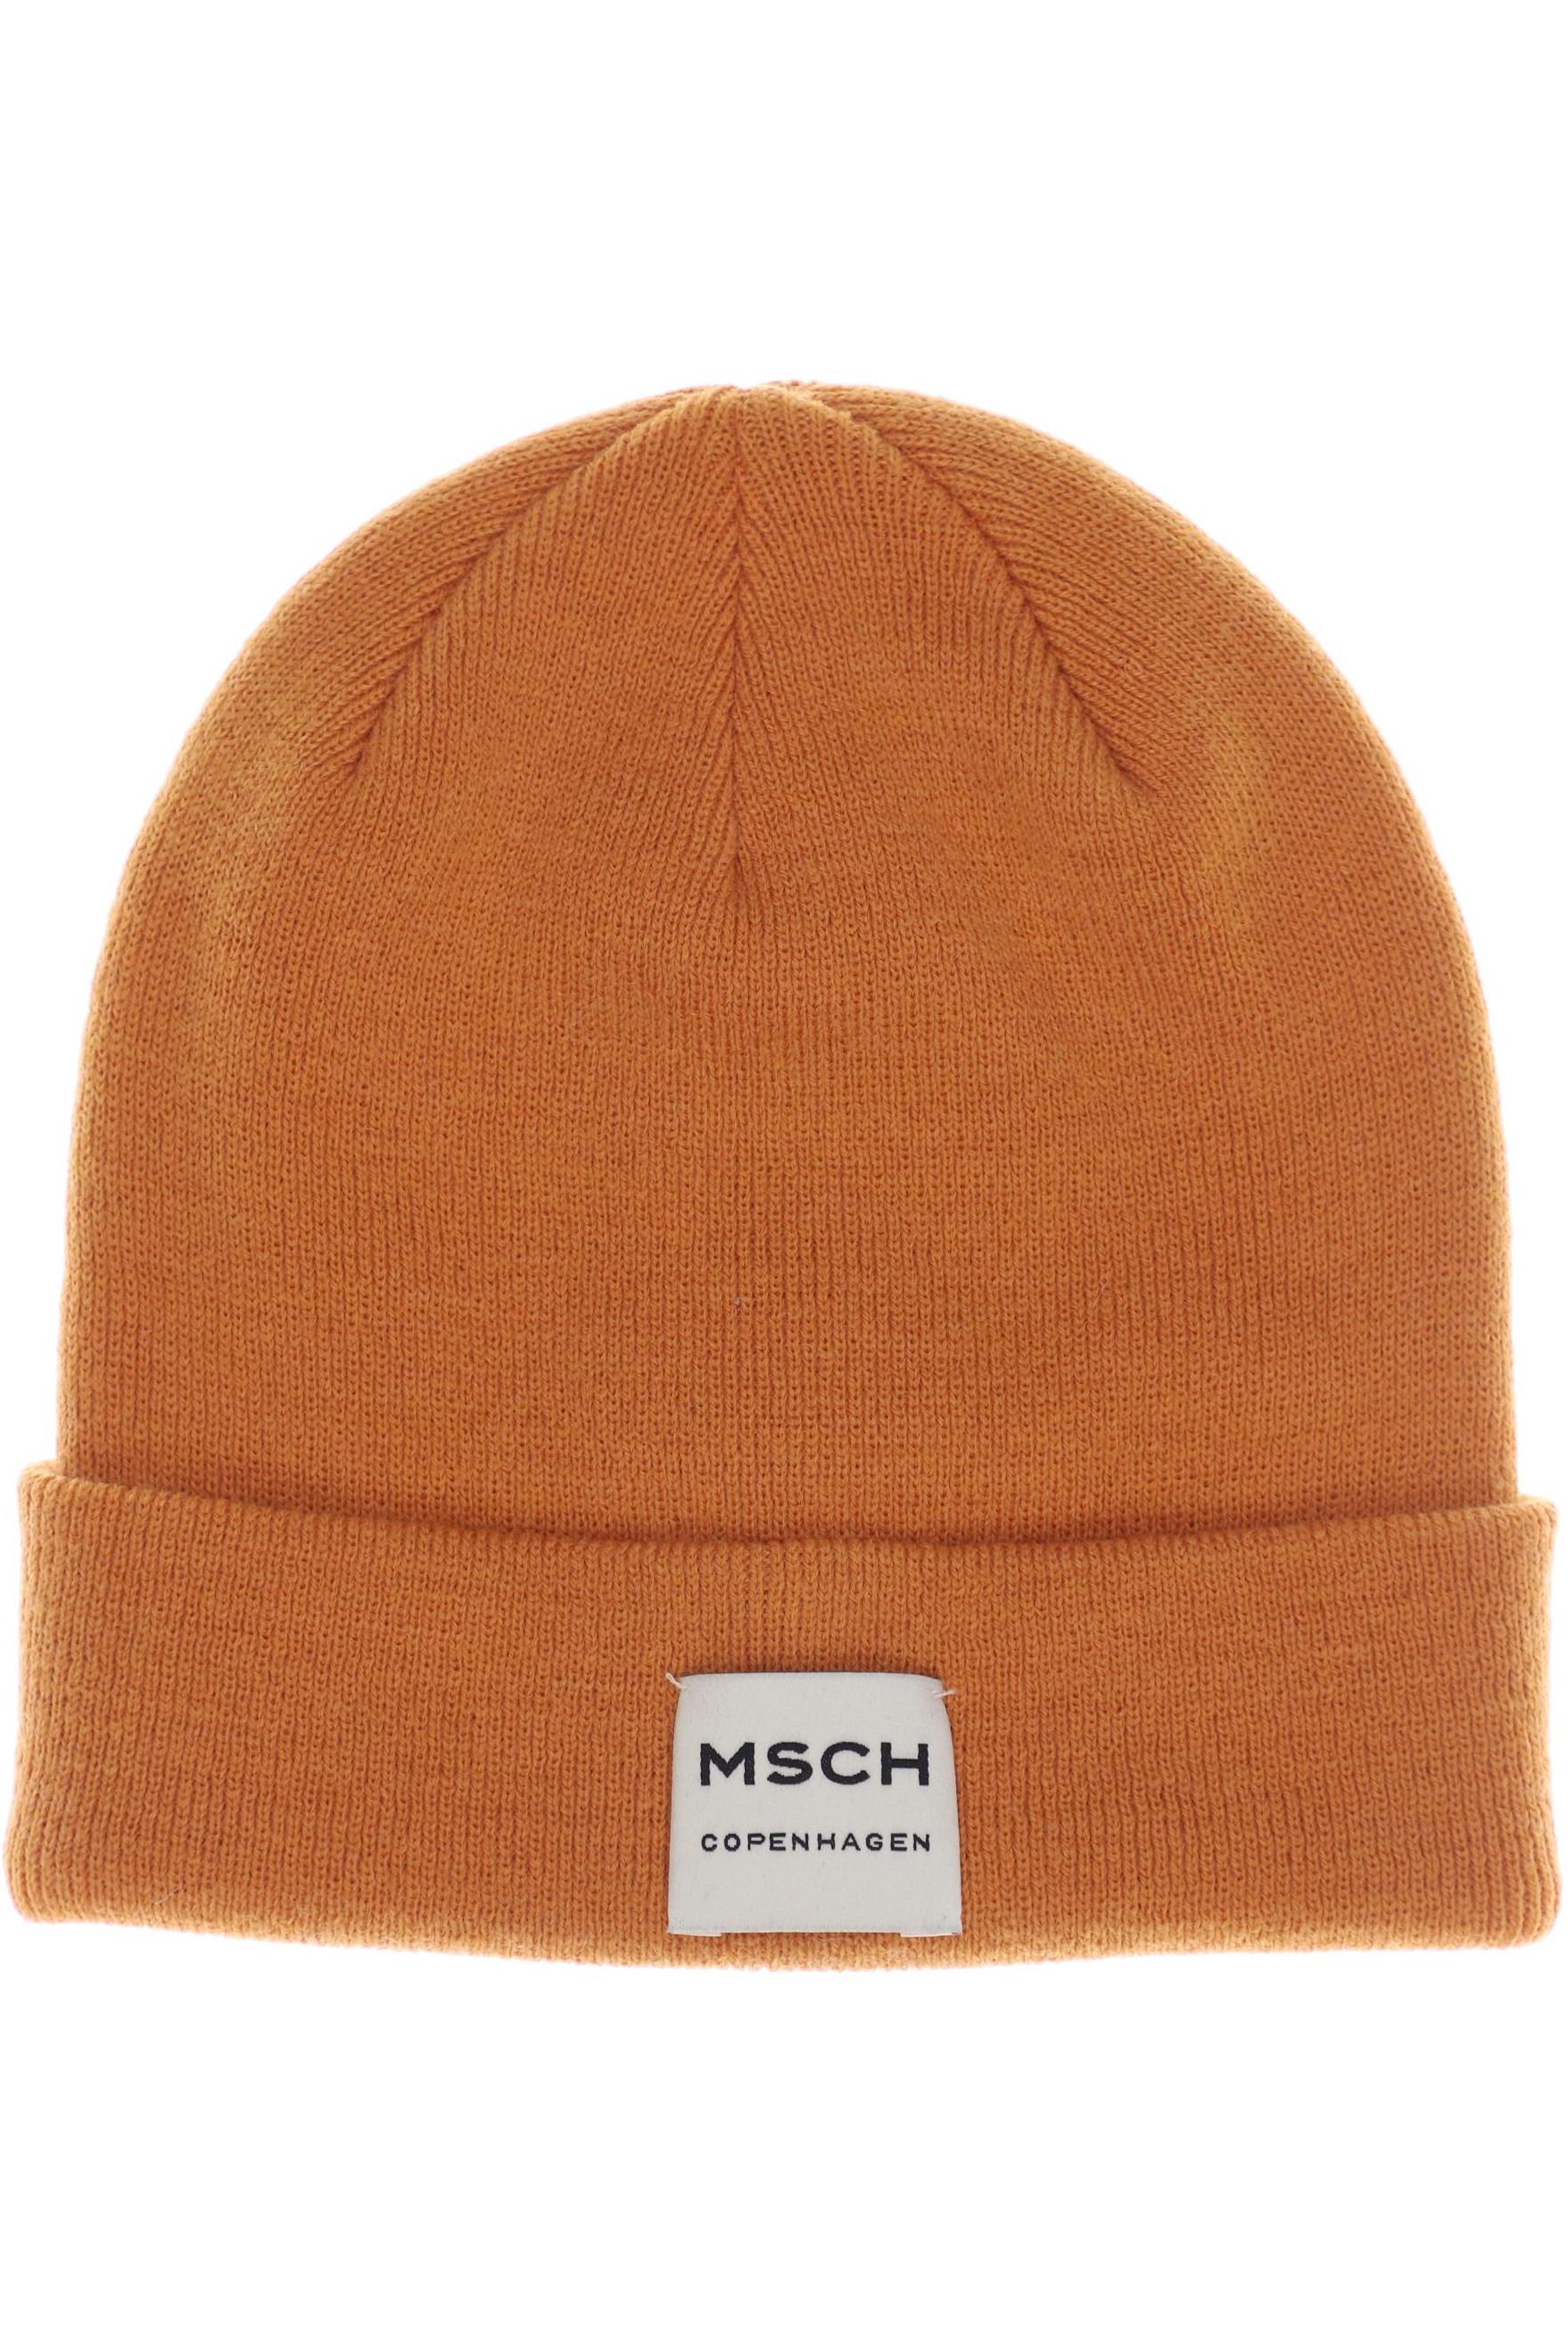 Mos Mosh Damen Hut/Mütze, orange, Gr. uni von MOS MOSH